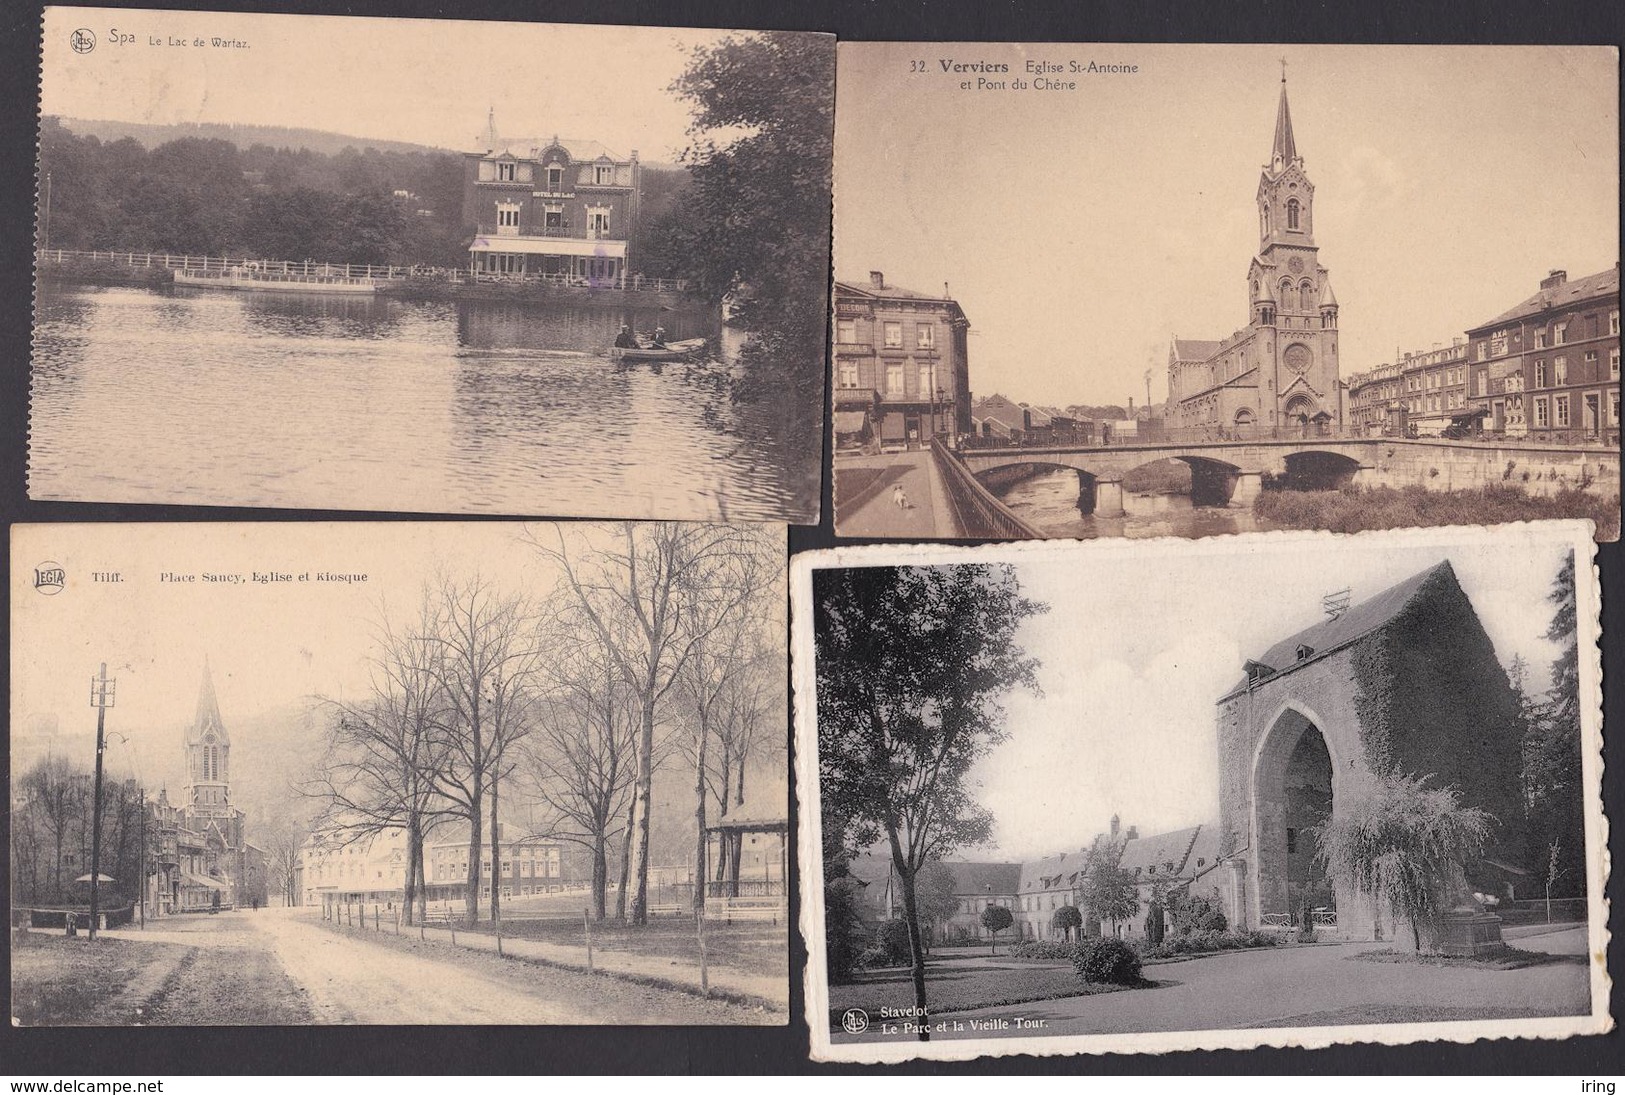 Beau lot de 20 cartes postales province de Liege Mooi lot van 20 postkaarten van provincie Luik